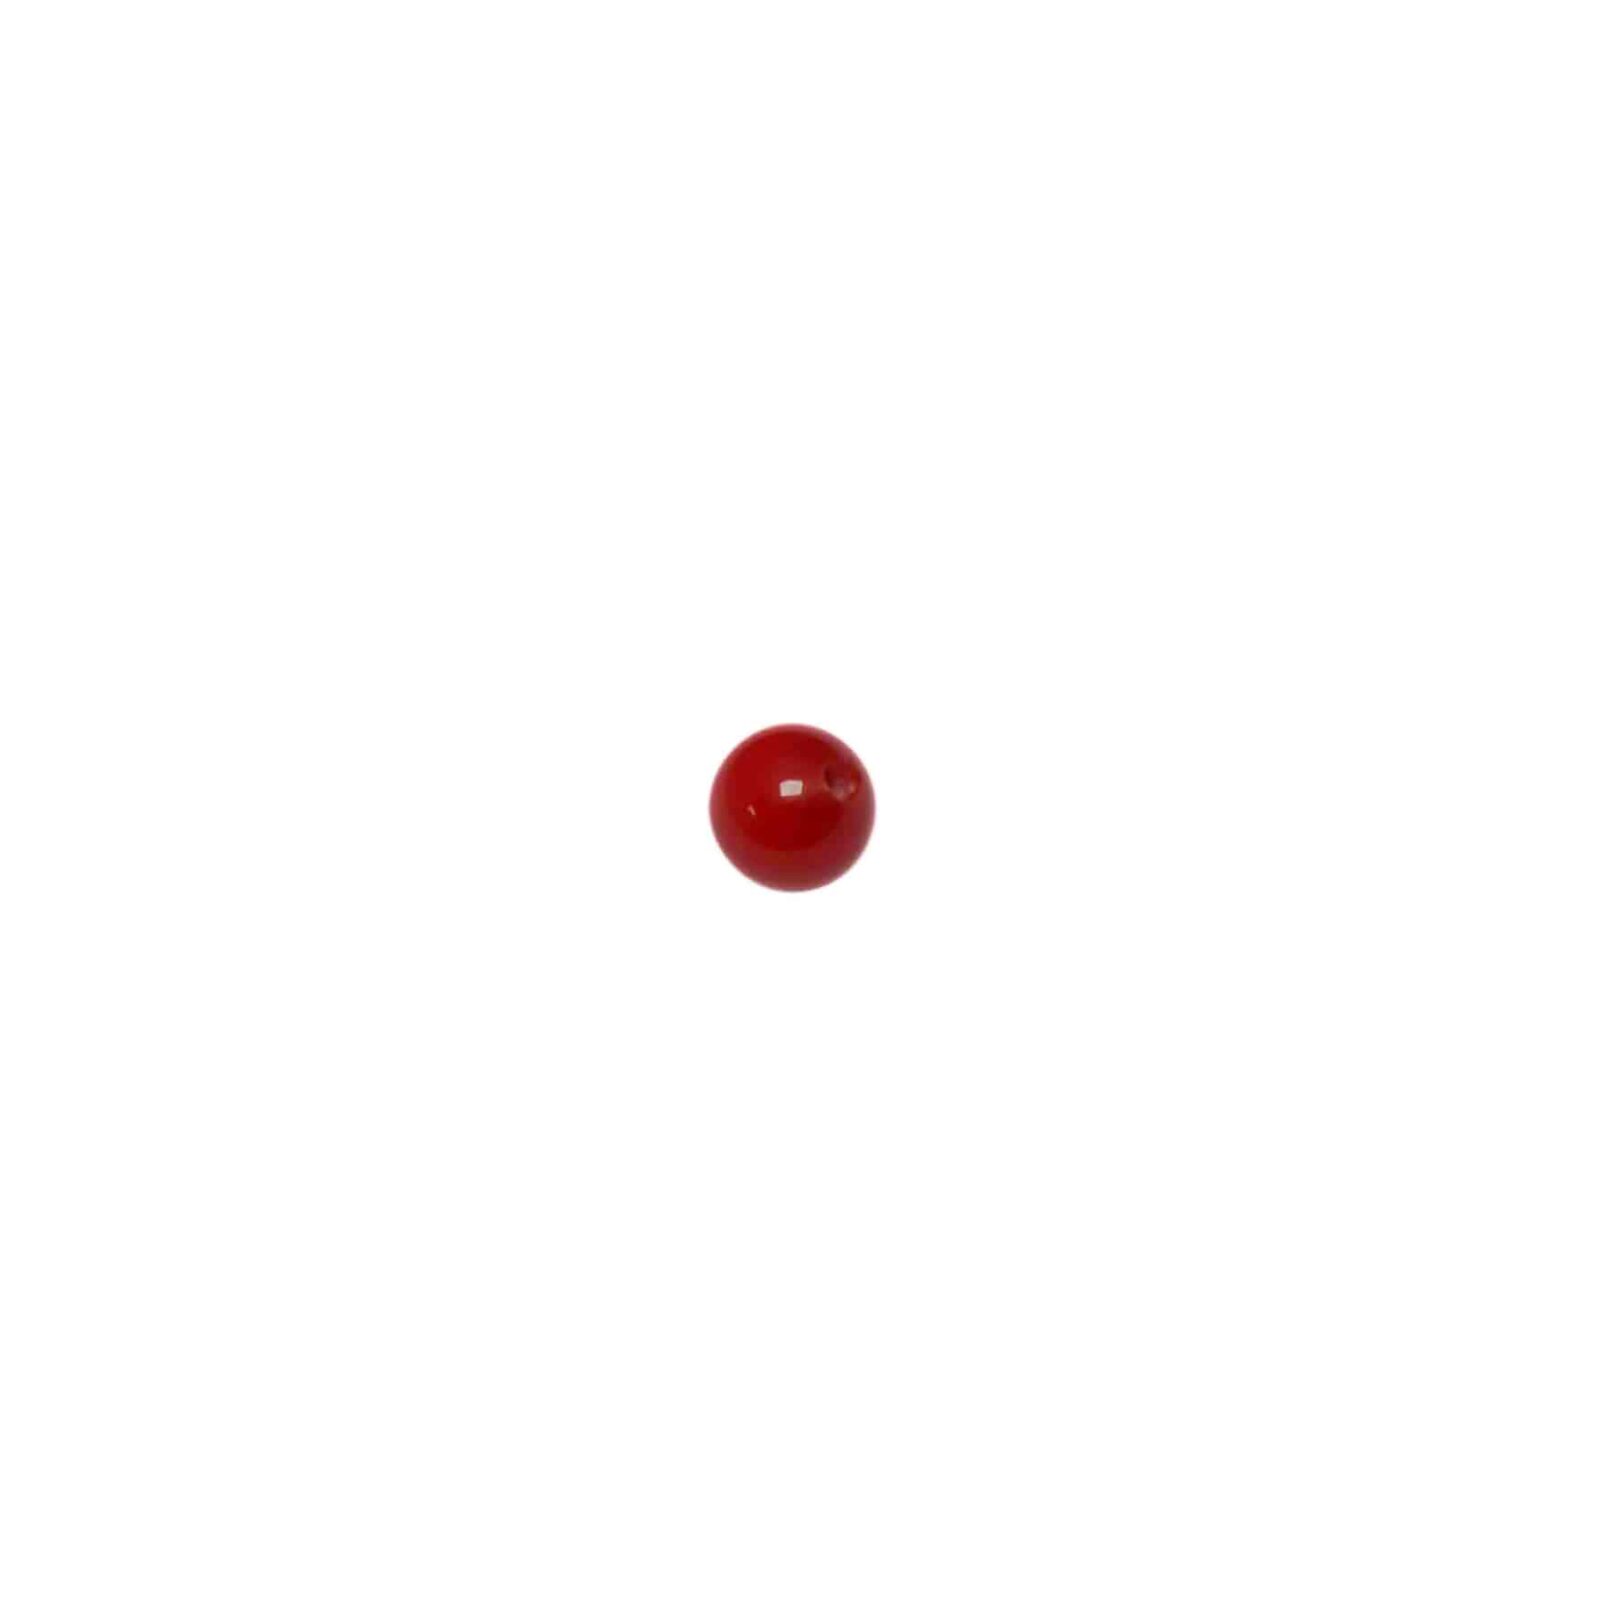 Rode ronde glaskraal met rode strepen